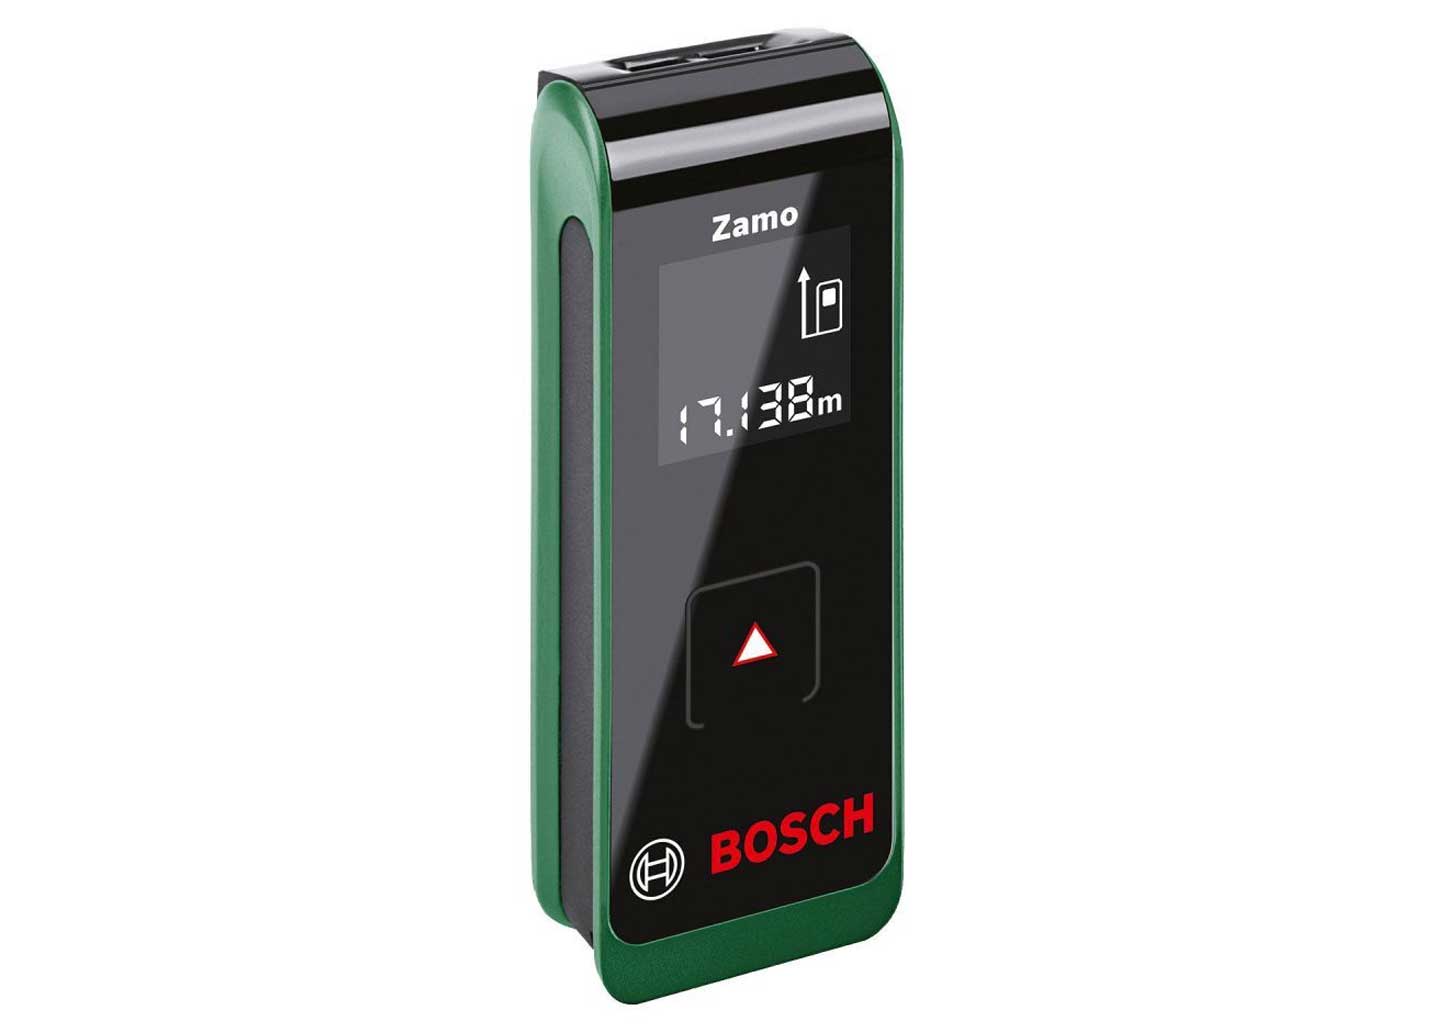 Лазерный дальномер Bosch Zamo, поколение II